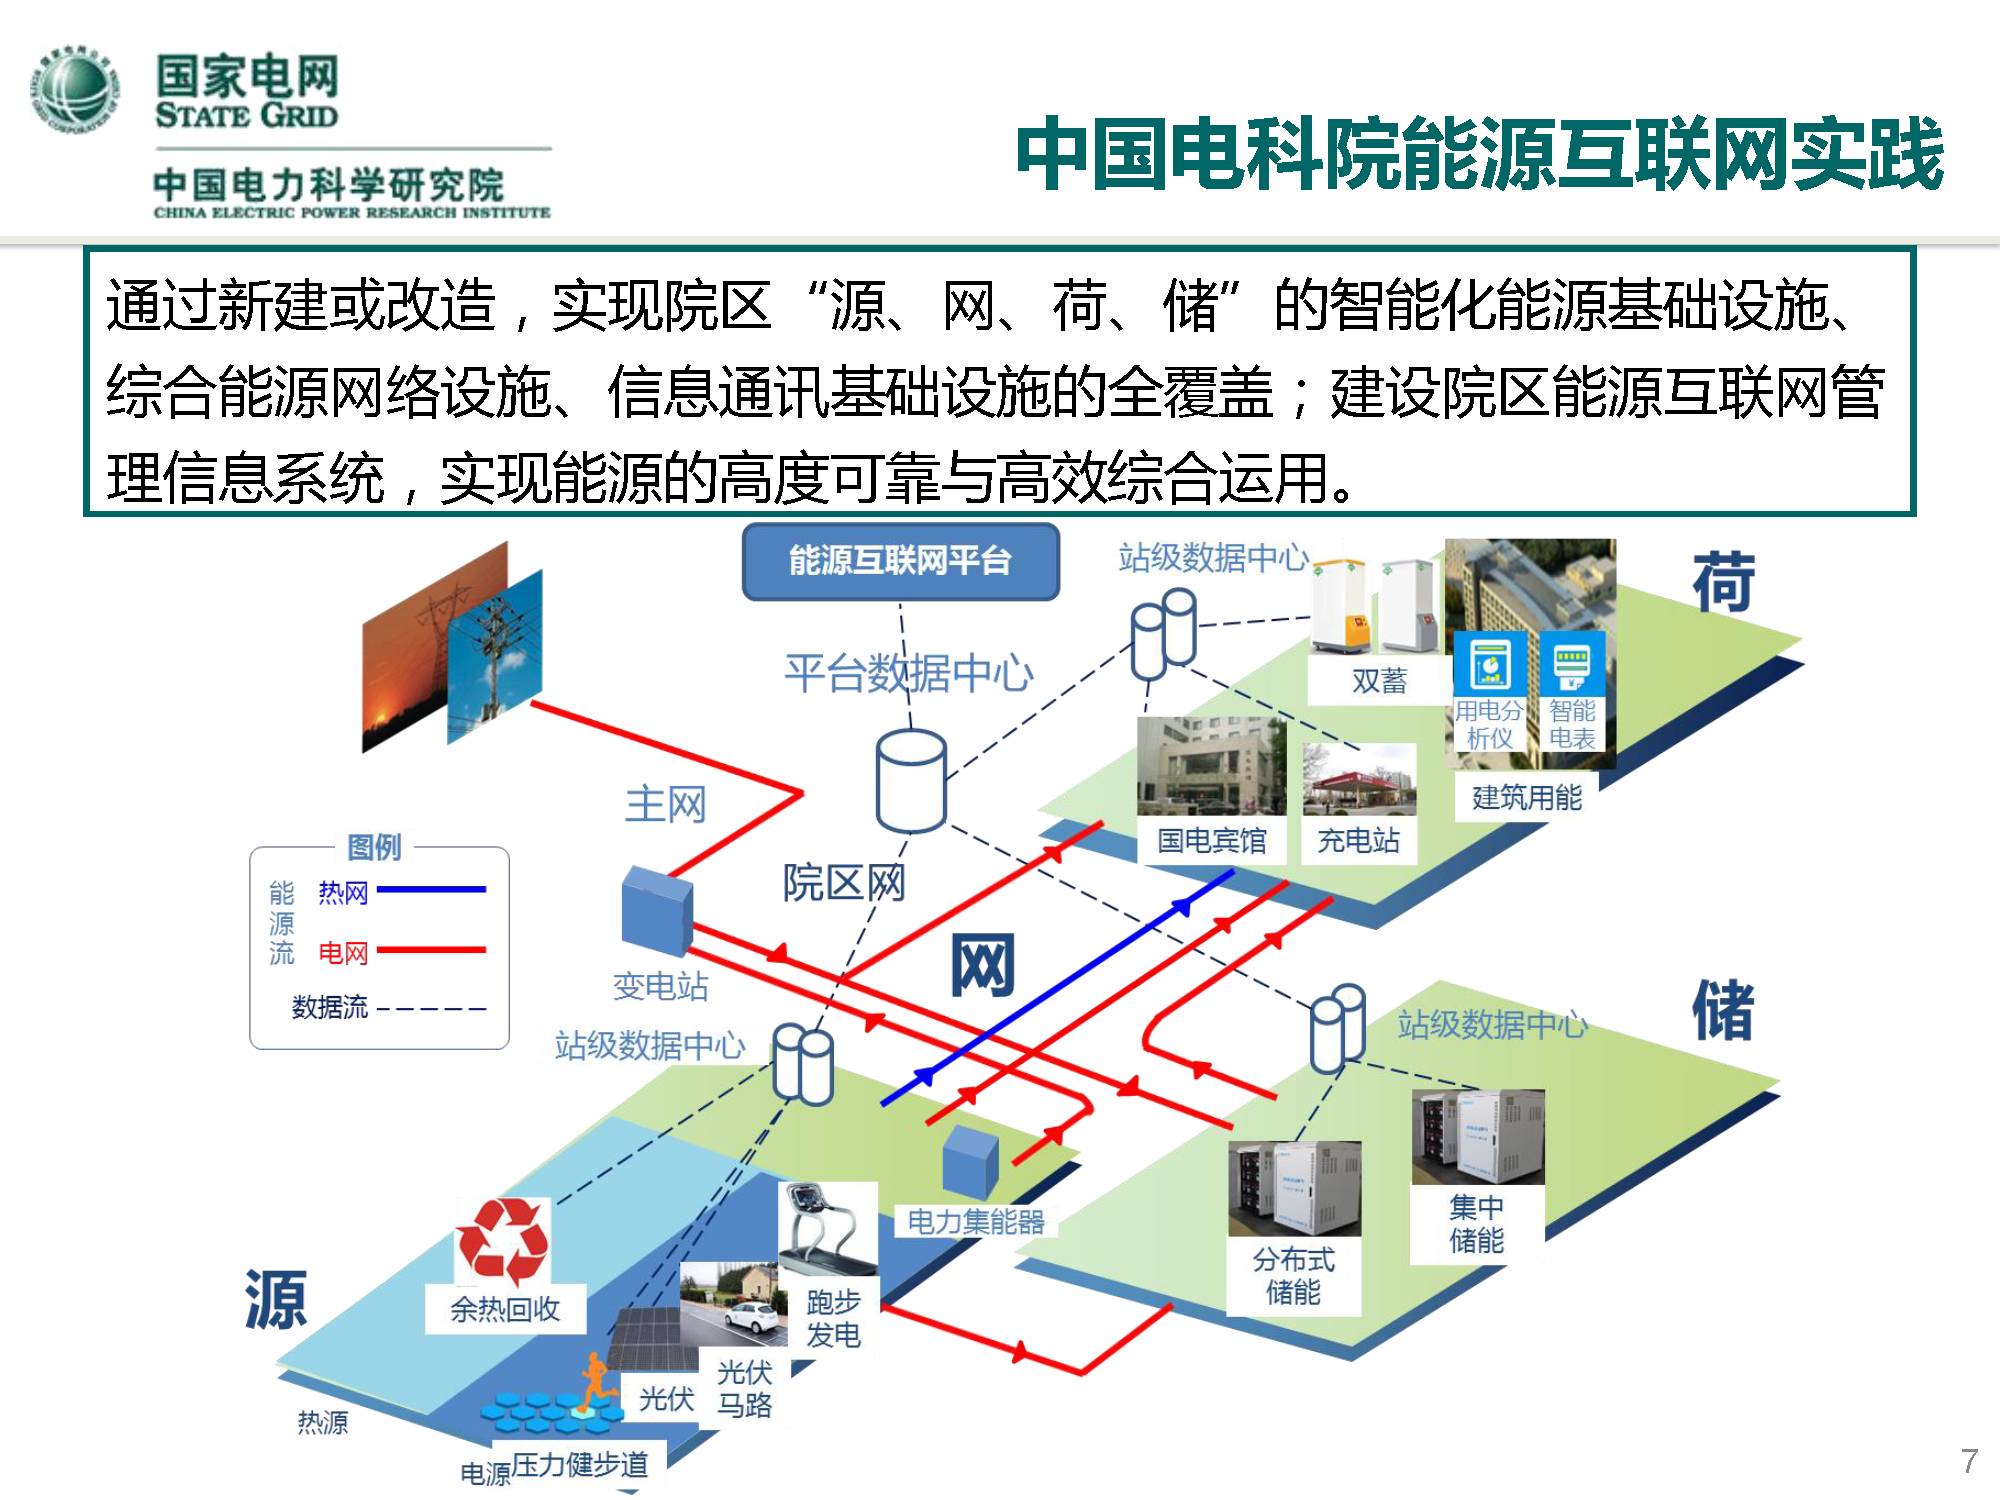 【焦点】中国电科院王继业:人工智能在能源电力领域的探索